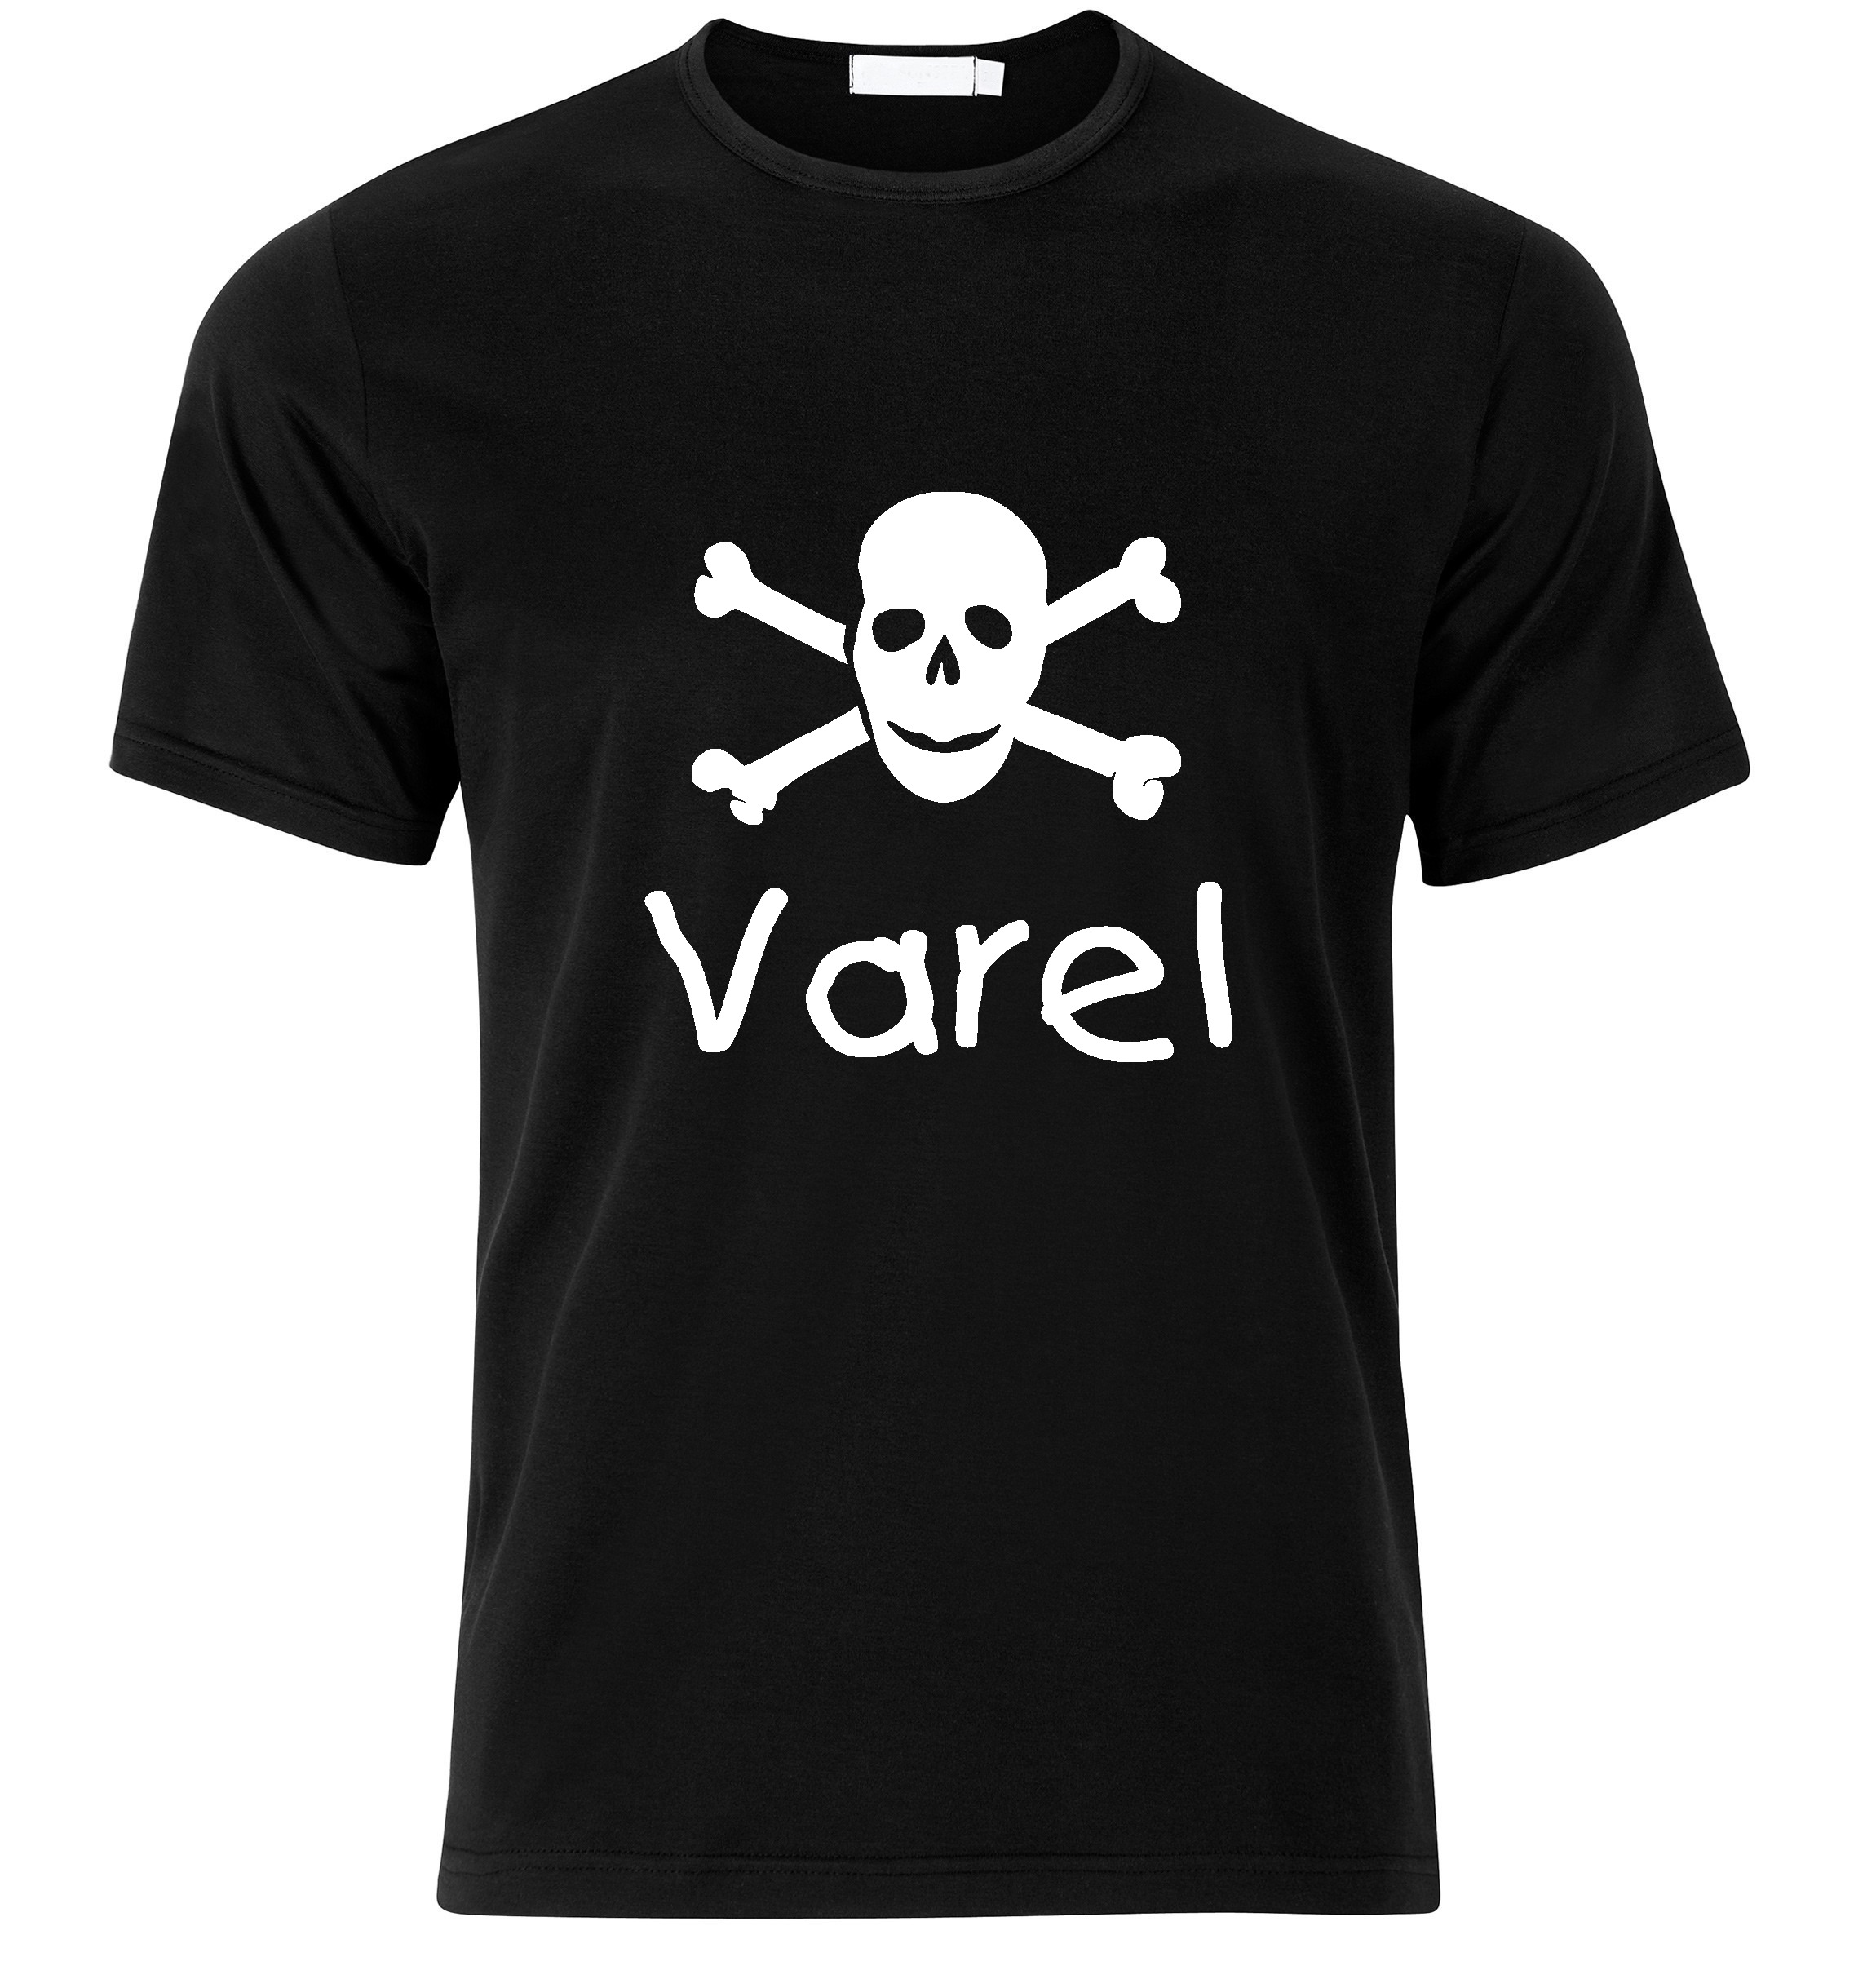 T-Shirt Varel Jolly Roger, Totenkopf